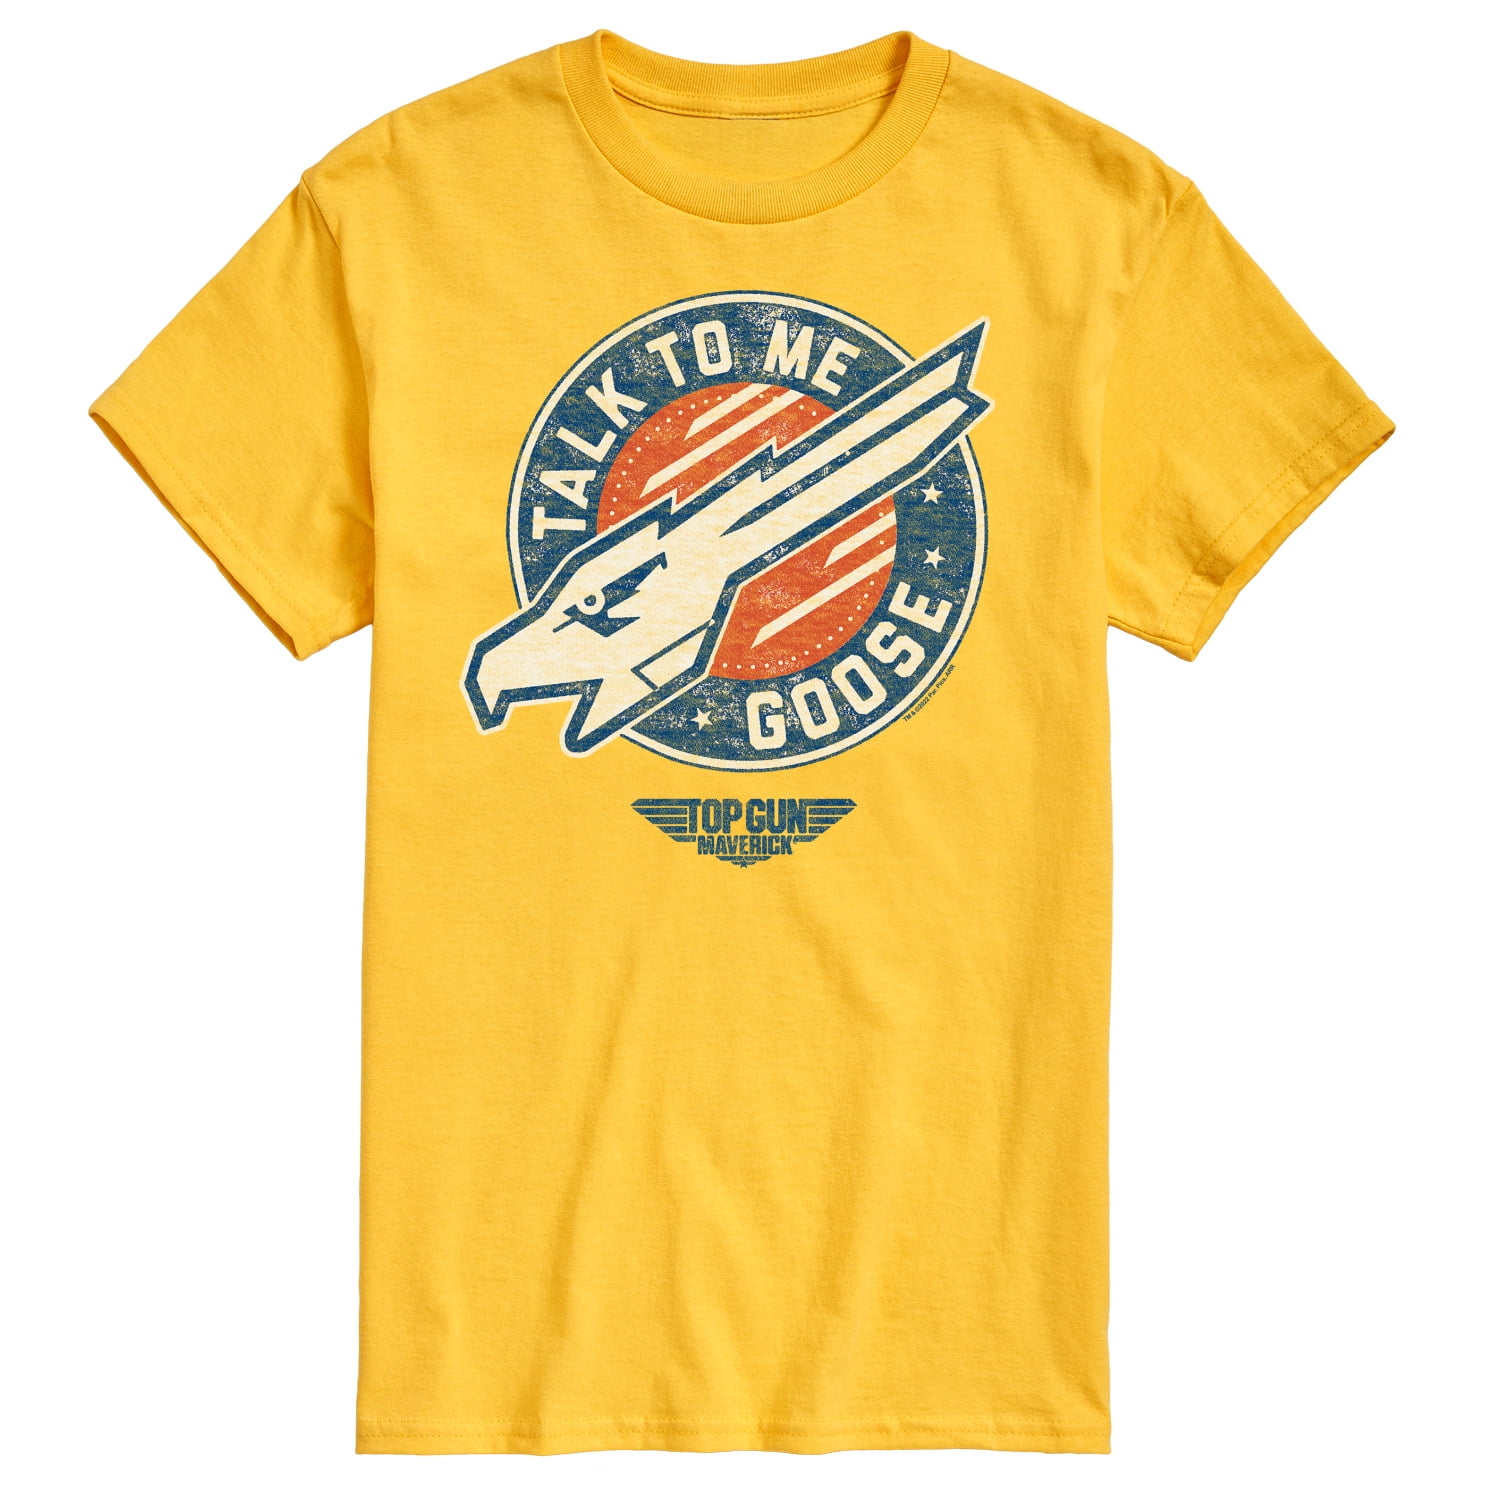 Top Gun: Maverick - Talk To Me Goose - Men's Short Sleeve Graphic T-Shirt